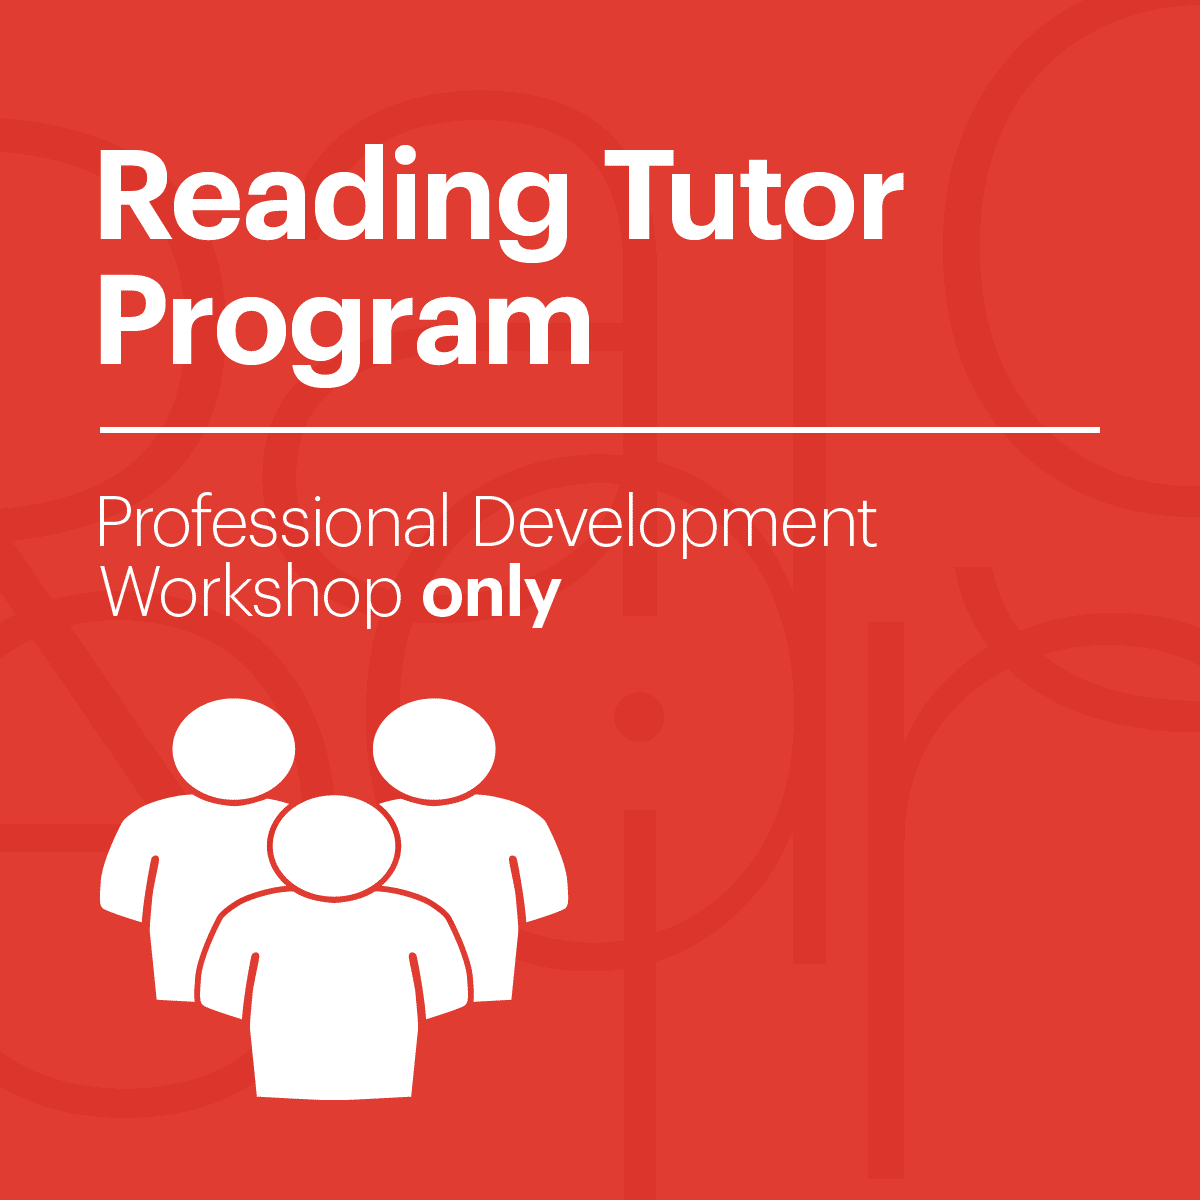 wrtp-reading-tutor-program-professional-development-workshop-image01-01.png